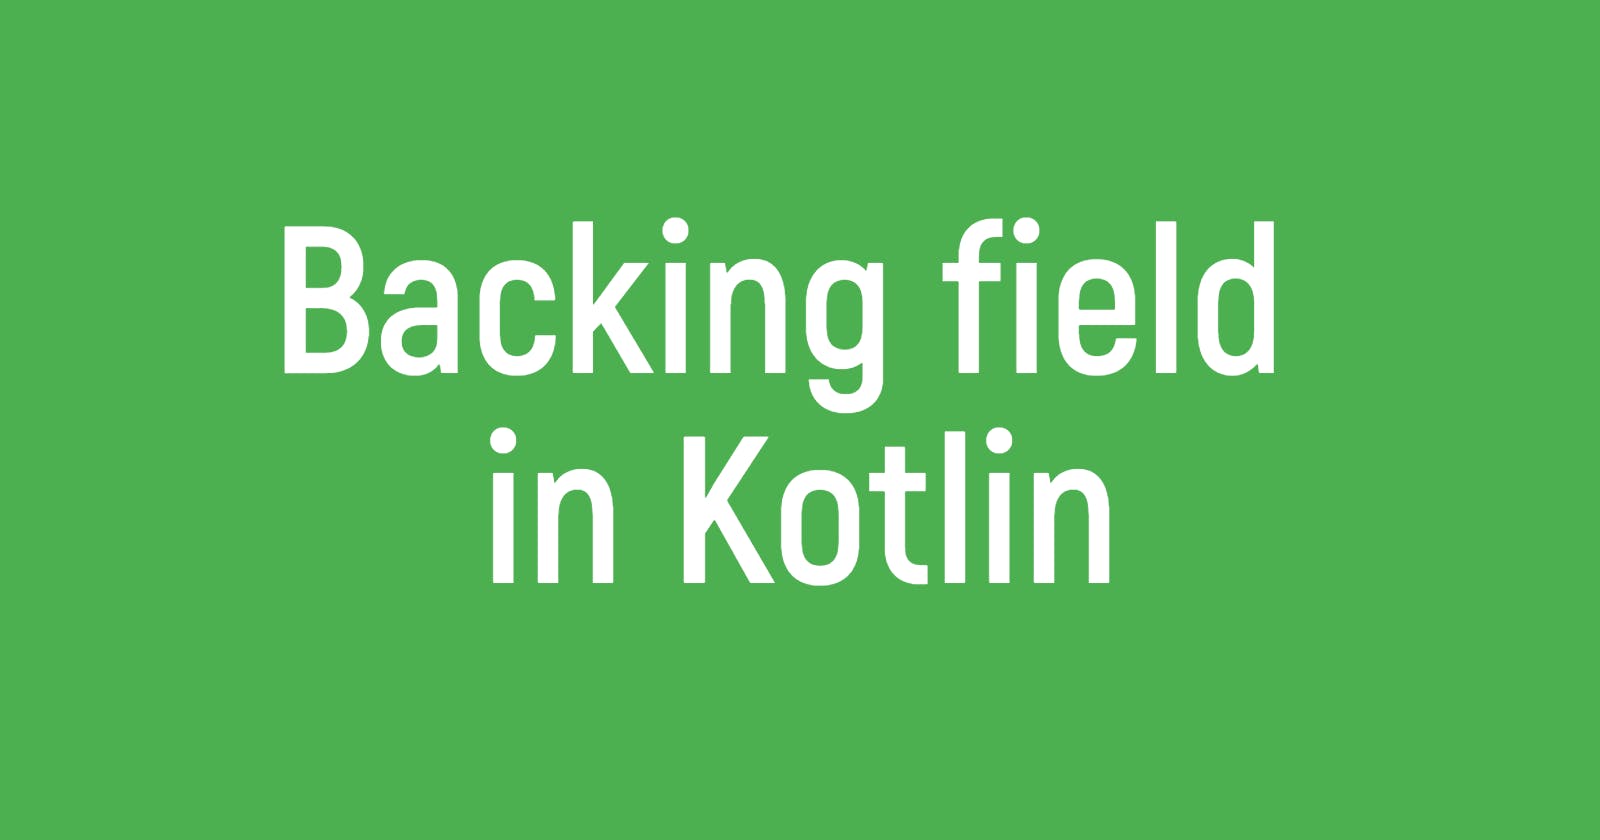 Backing field in Kotlin